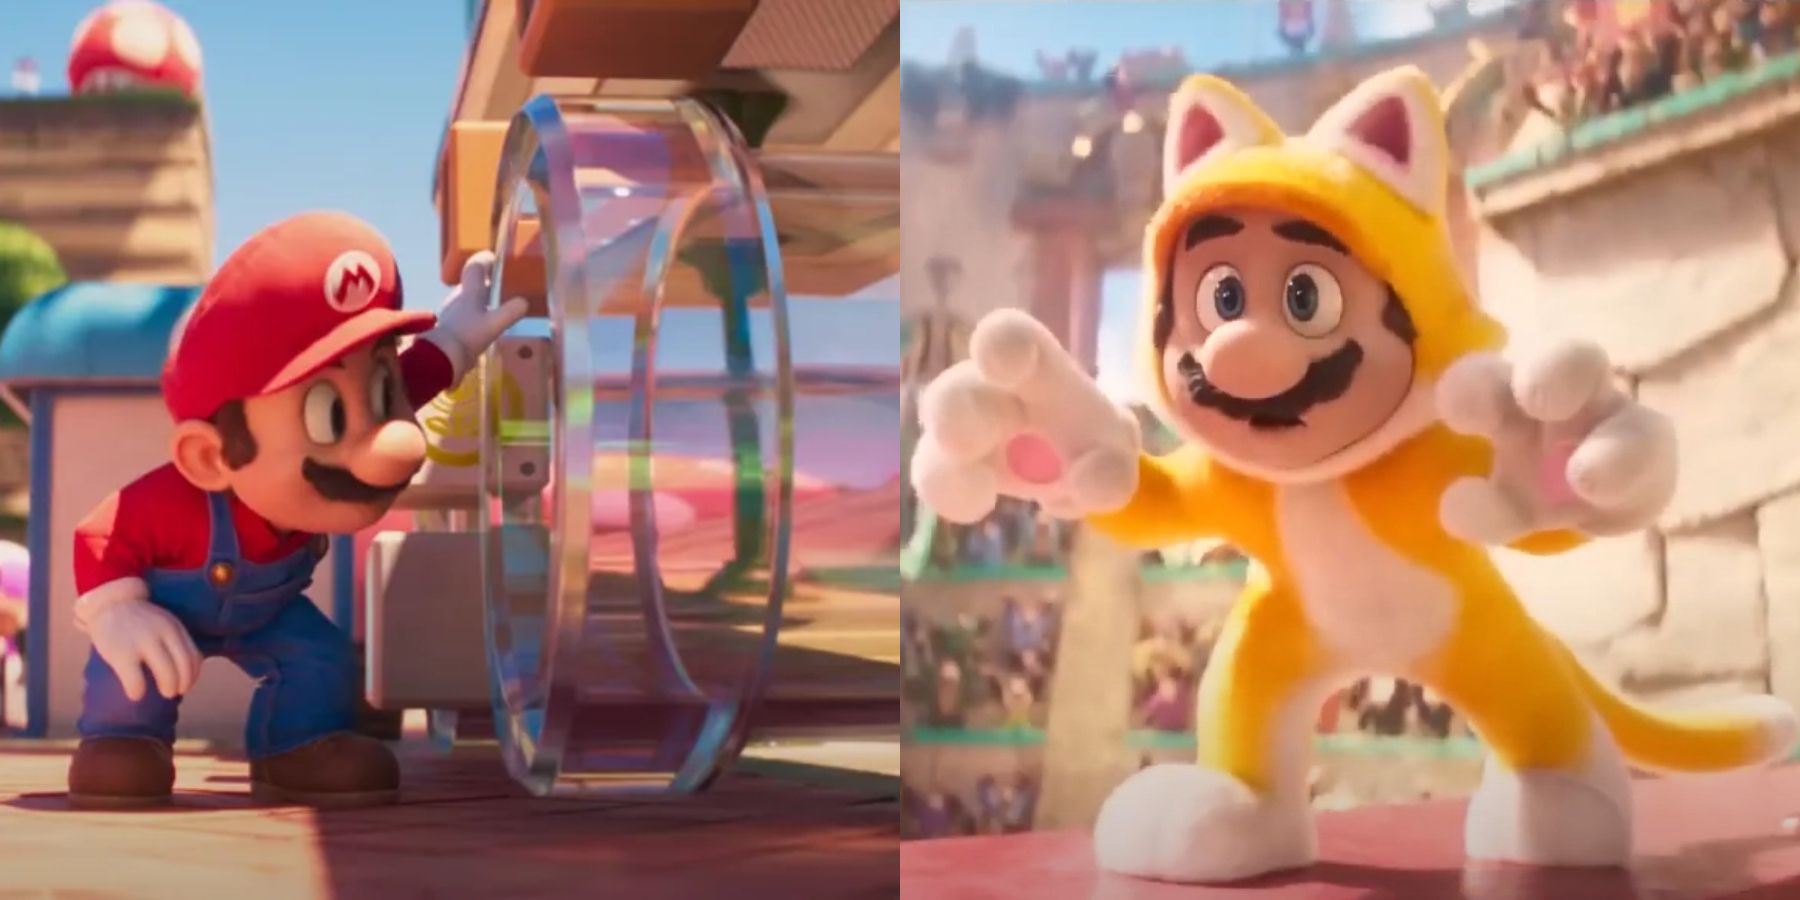 Clear pipes and Cat mario Super Mario Bros. movie split image